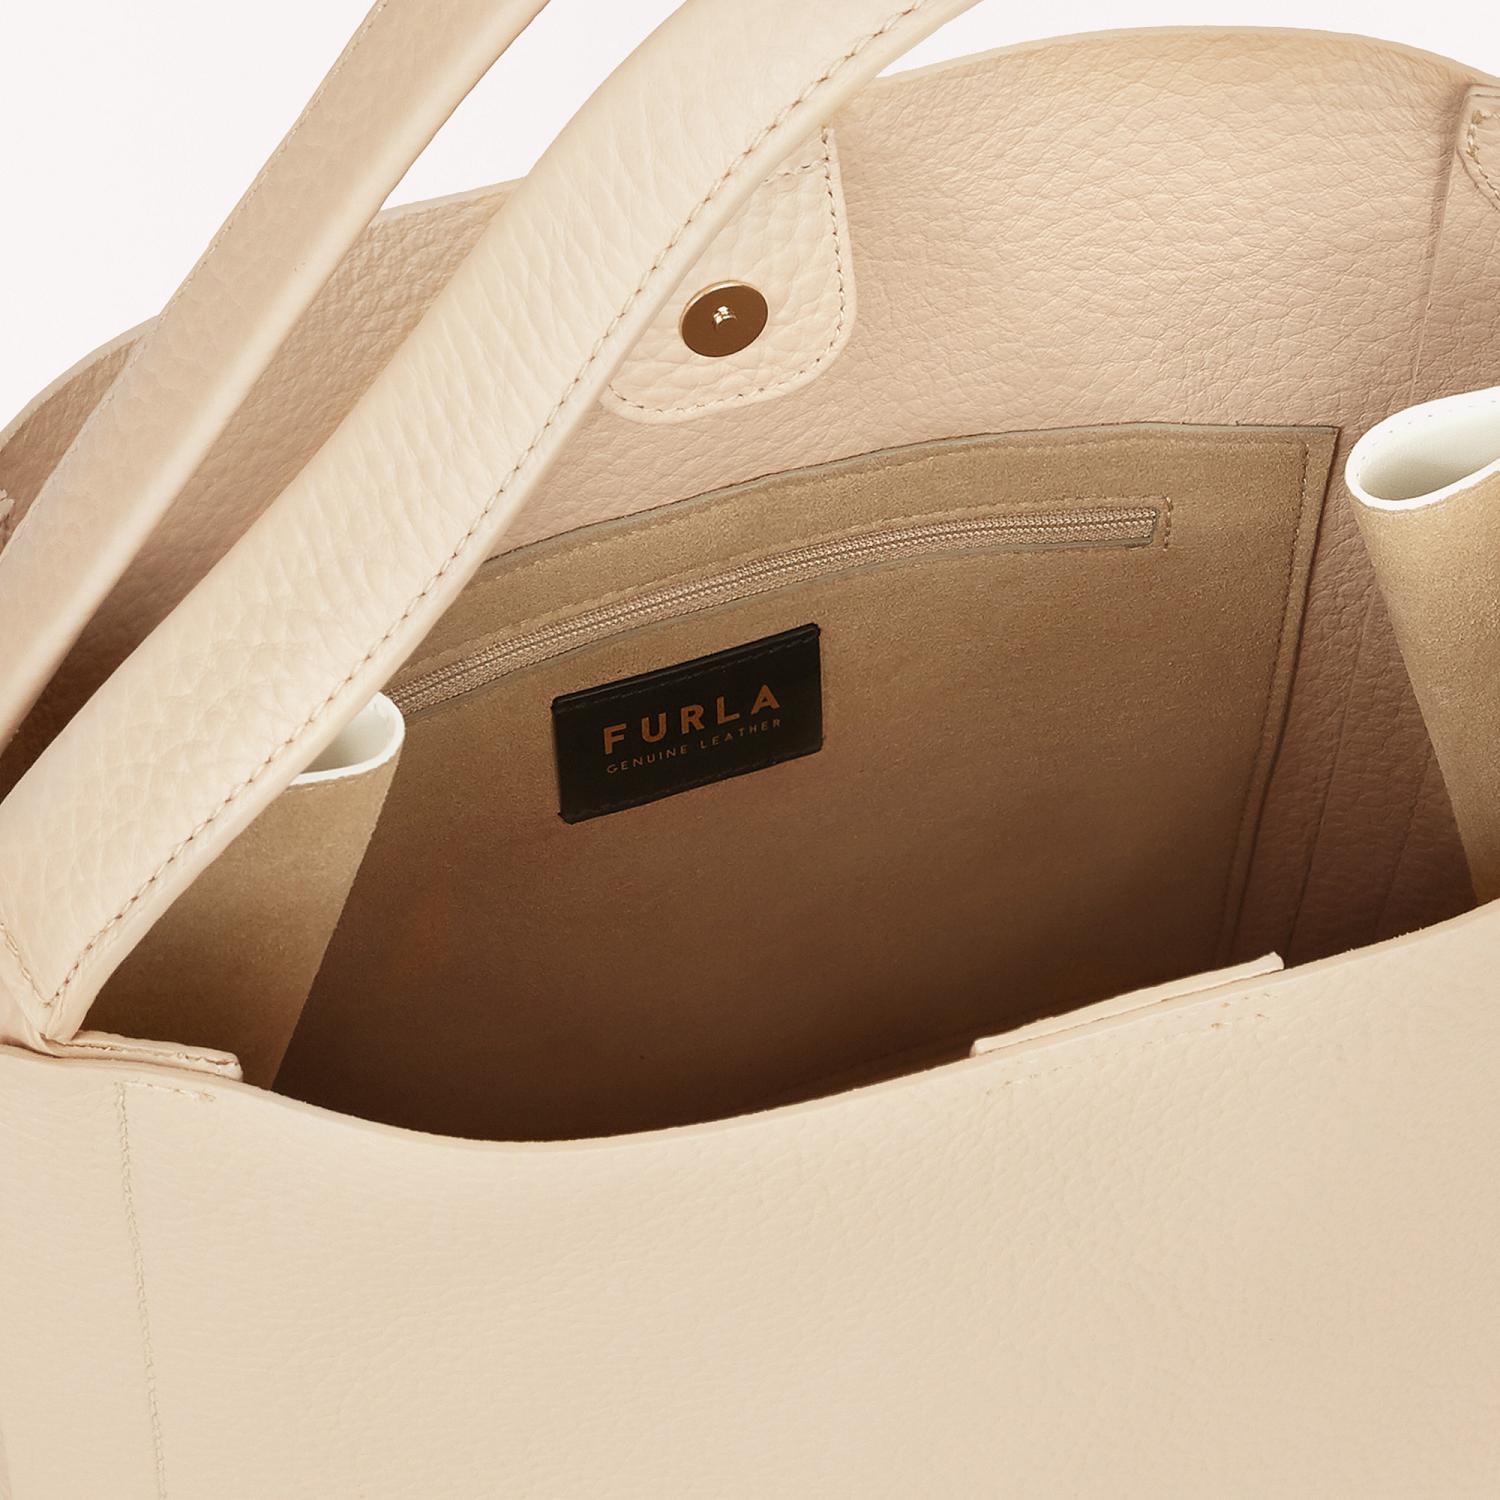 Furla Outlet: Grace hobo bag in grained leather - Pink  Furla shoulder bag  BAUUFGC QUB000 online at